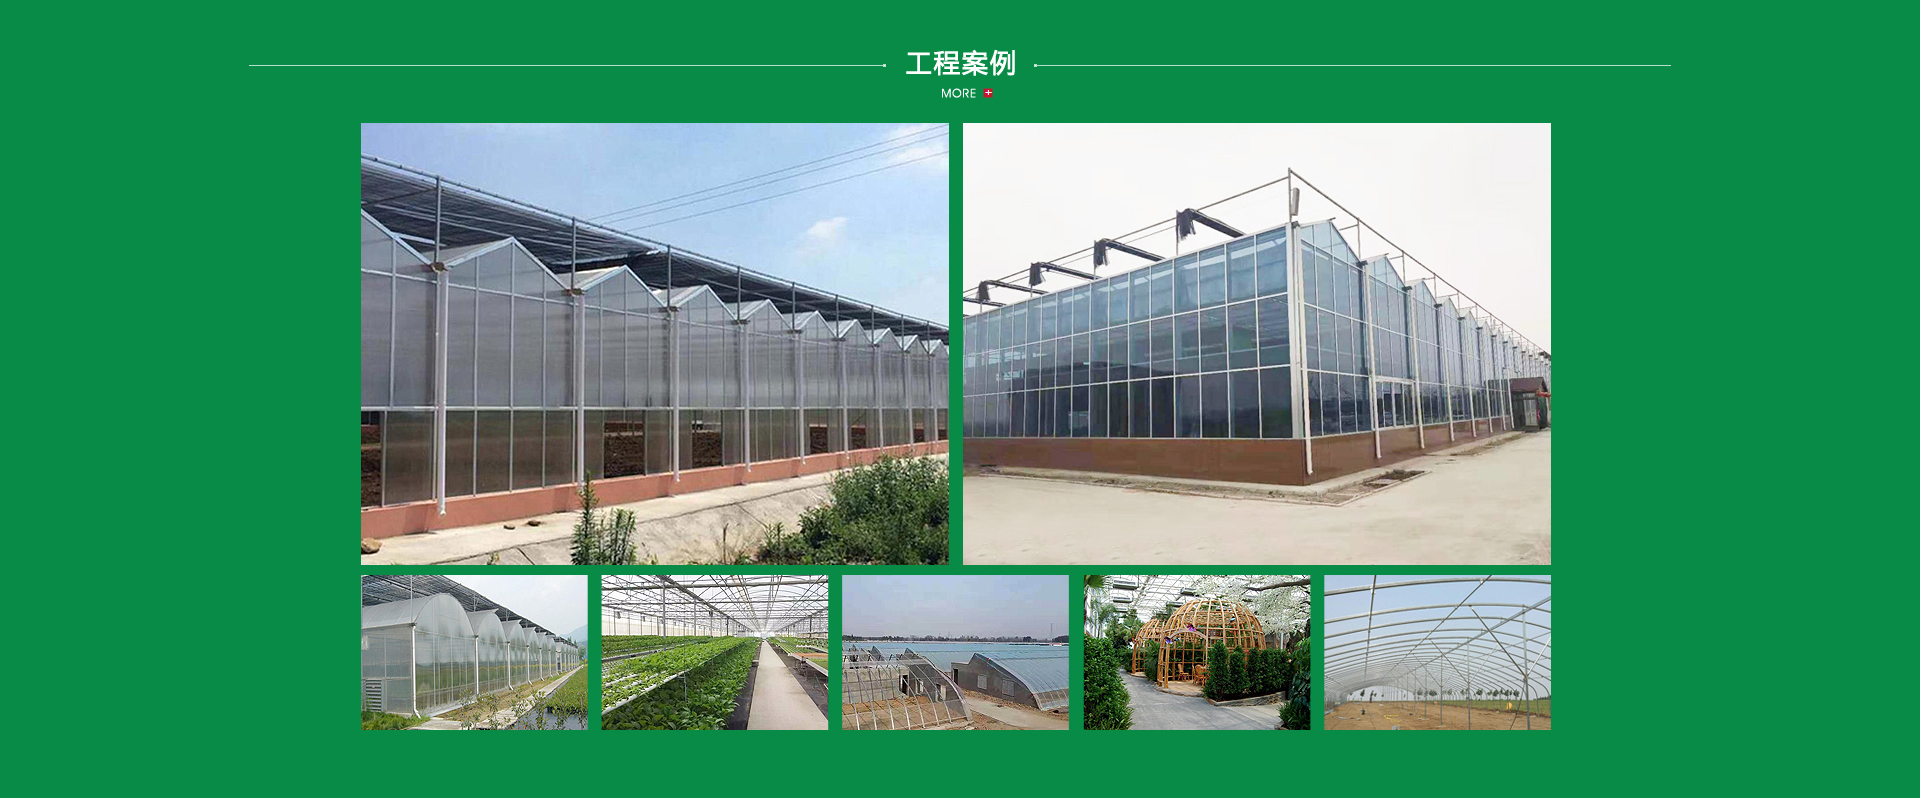 青州市騰輝農業科技有限公司